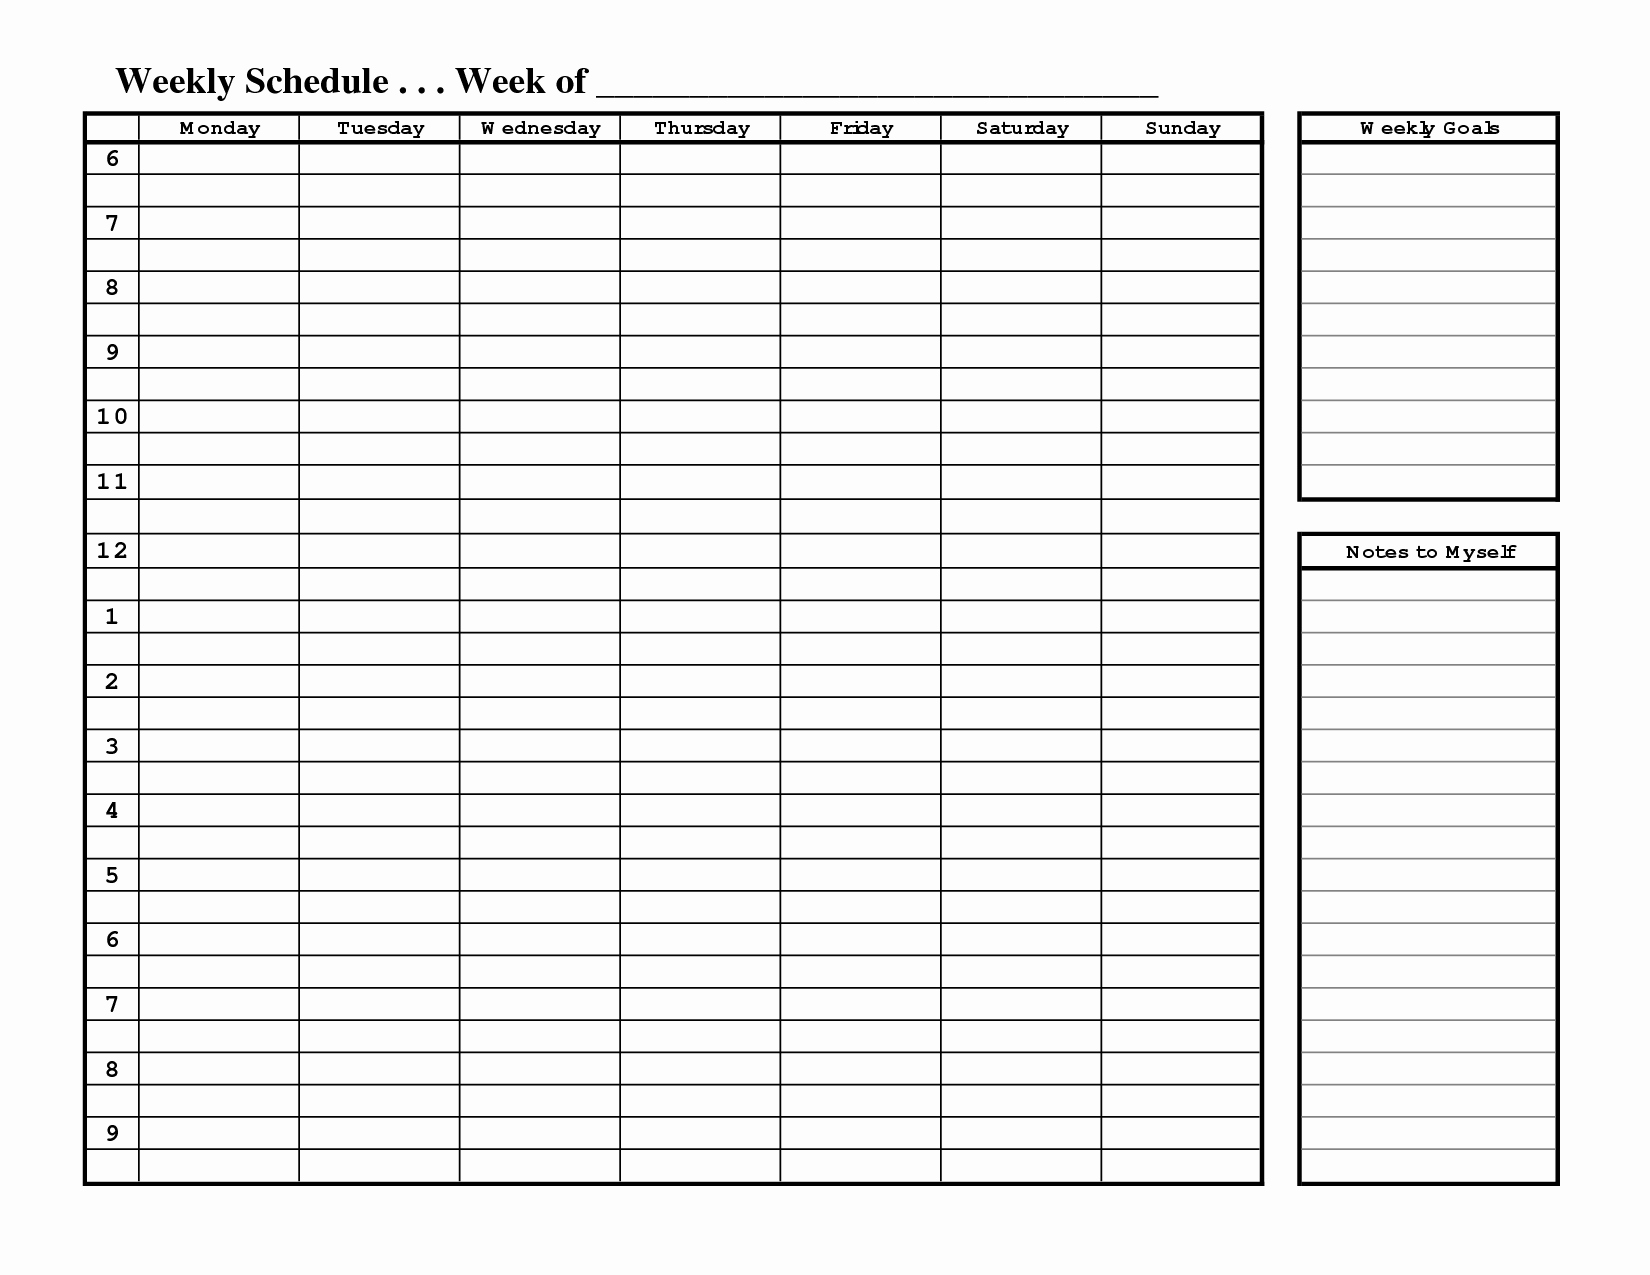 One Week Schedule Template Elegant Free Printable Weekly Schedule Template